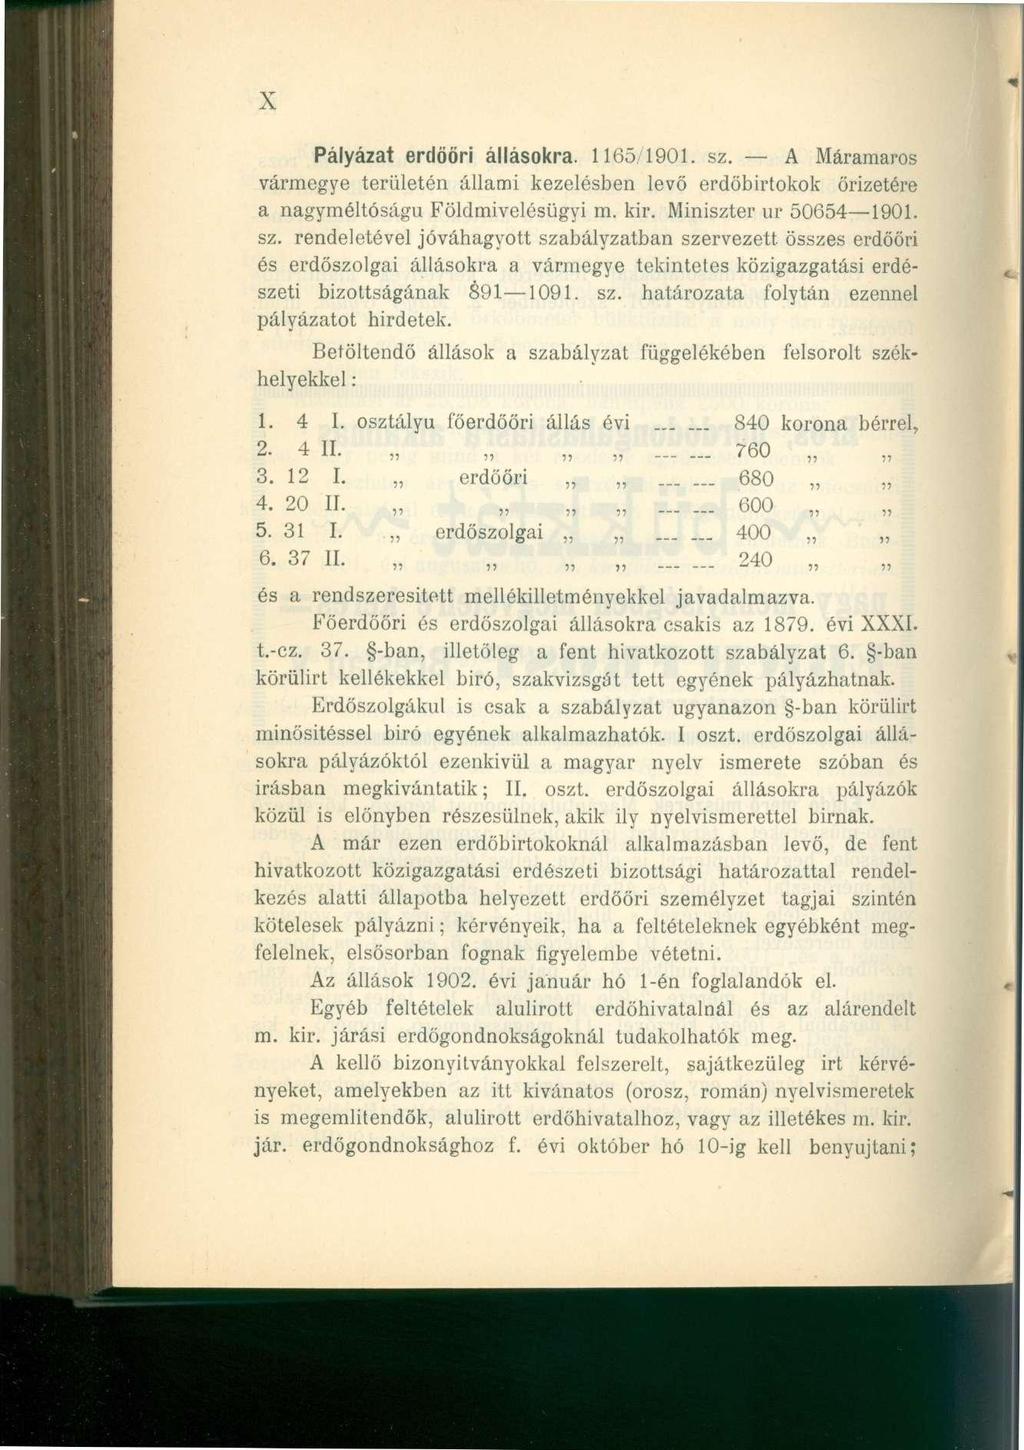 X Pályázat erdőőri állásokra. 1165/1901. sz.